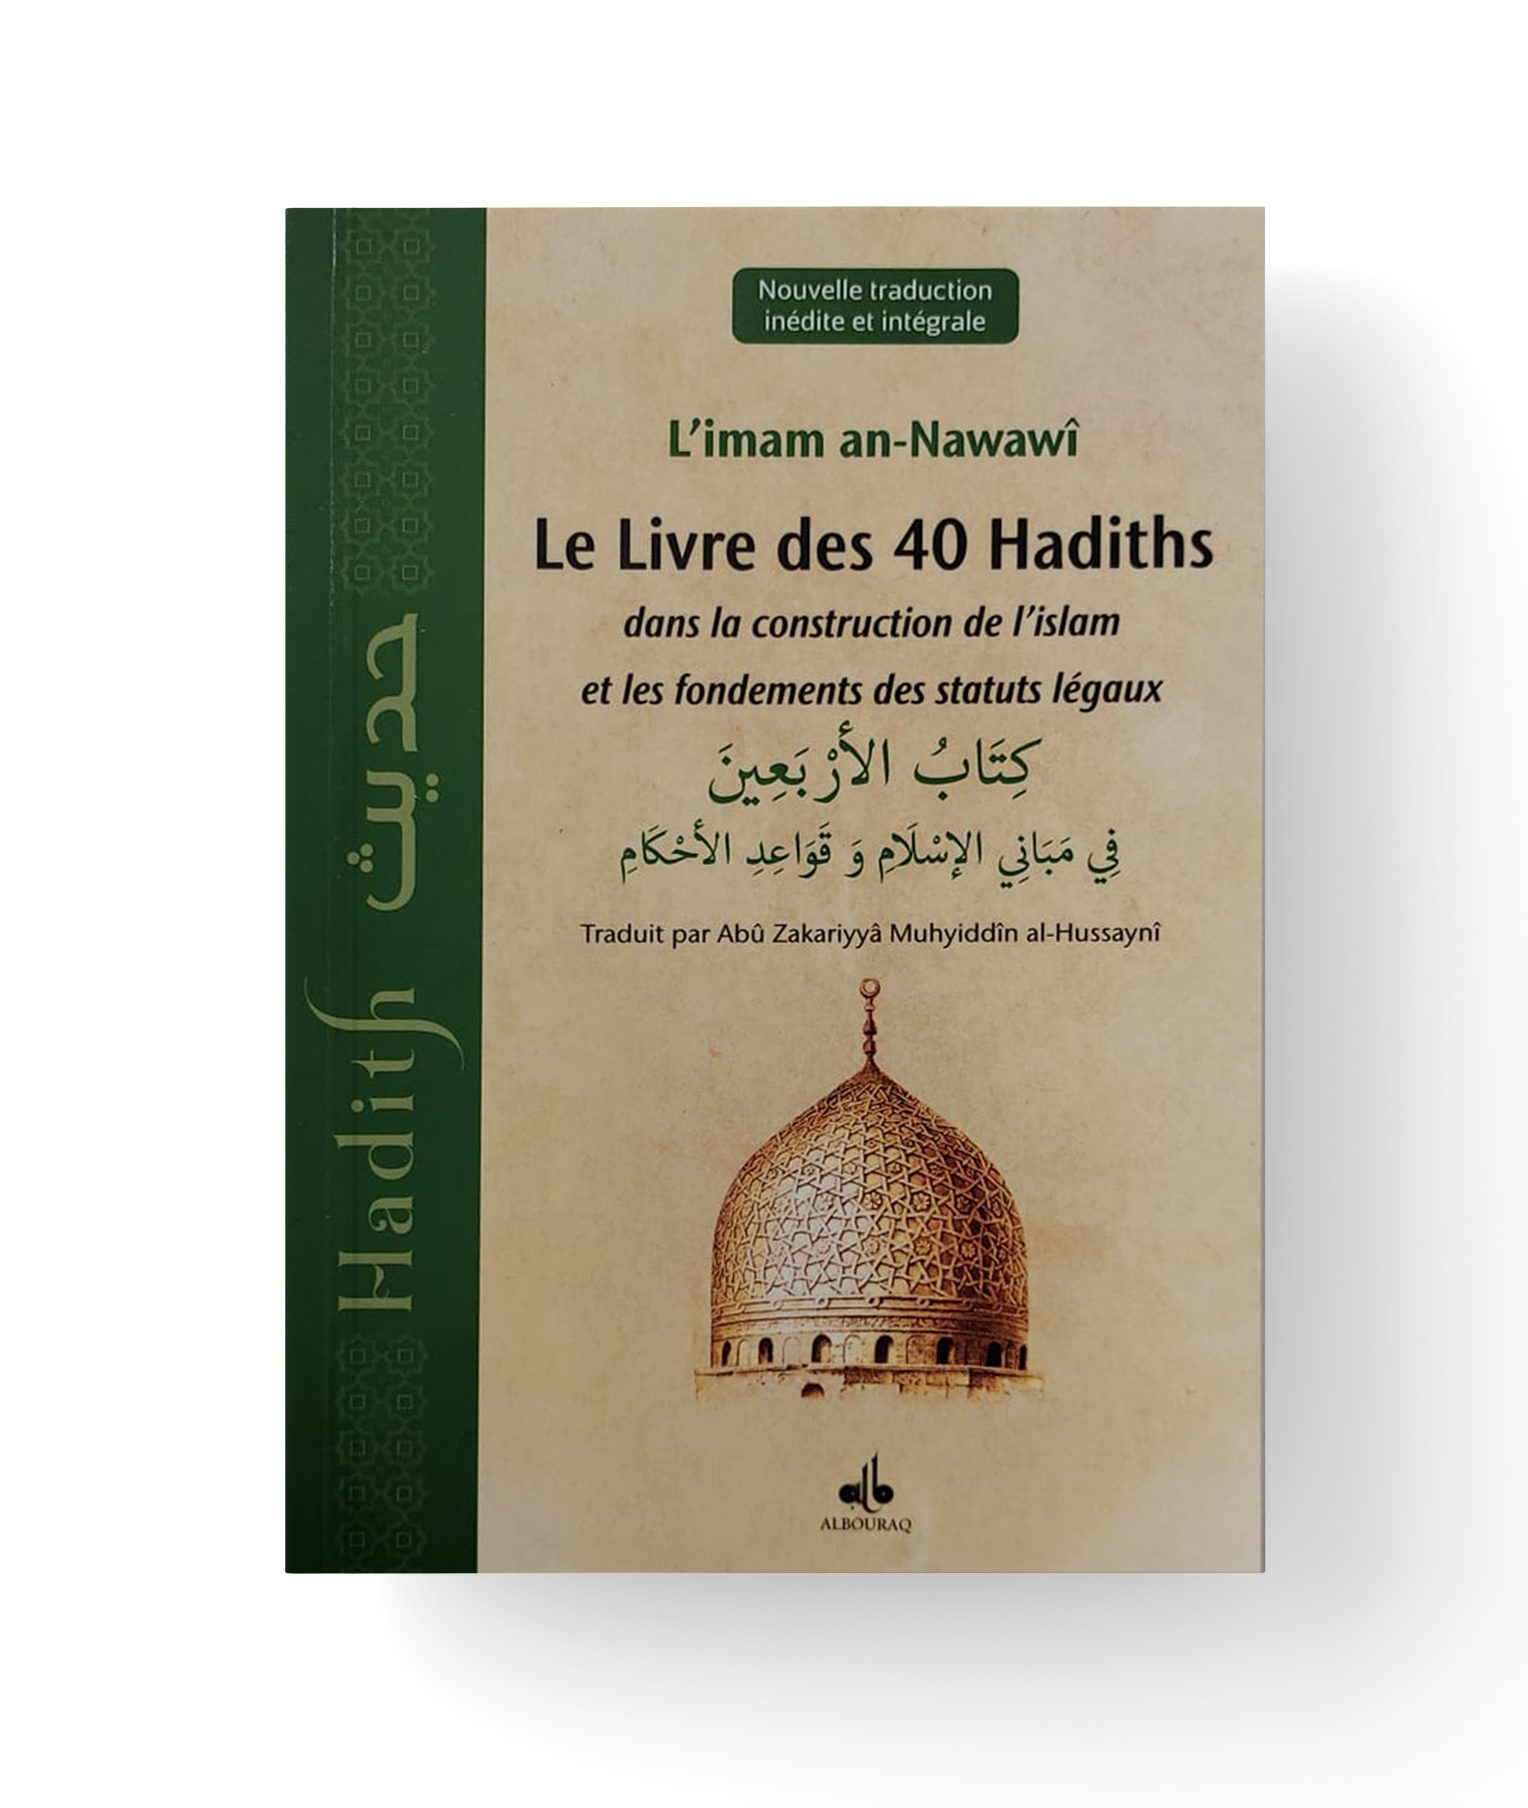 Le livre des 40 hadiths